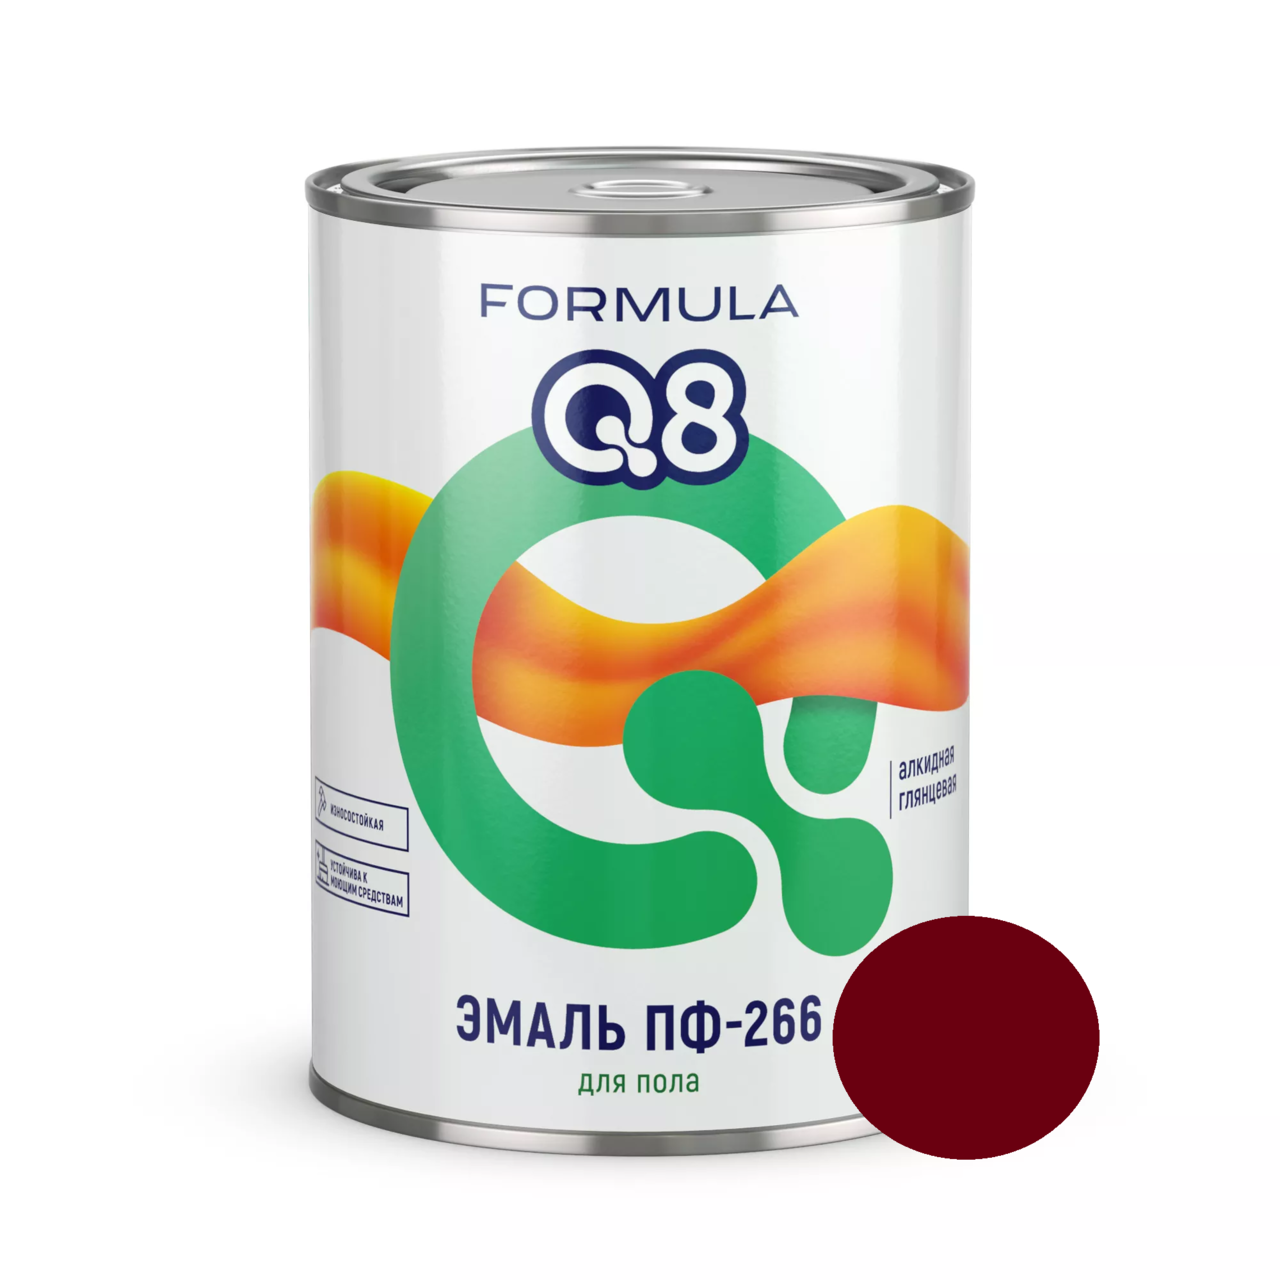 Эмаль ПФ-266 Formula Q8 красно-коричневая 0,9 кг